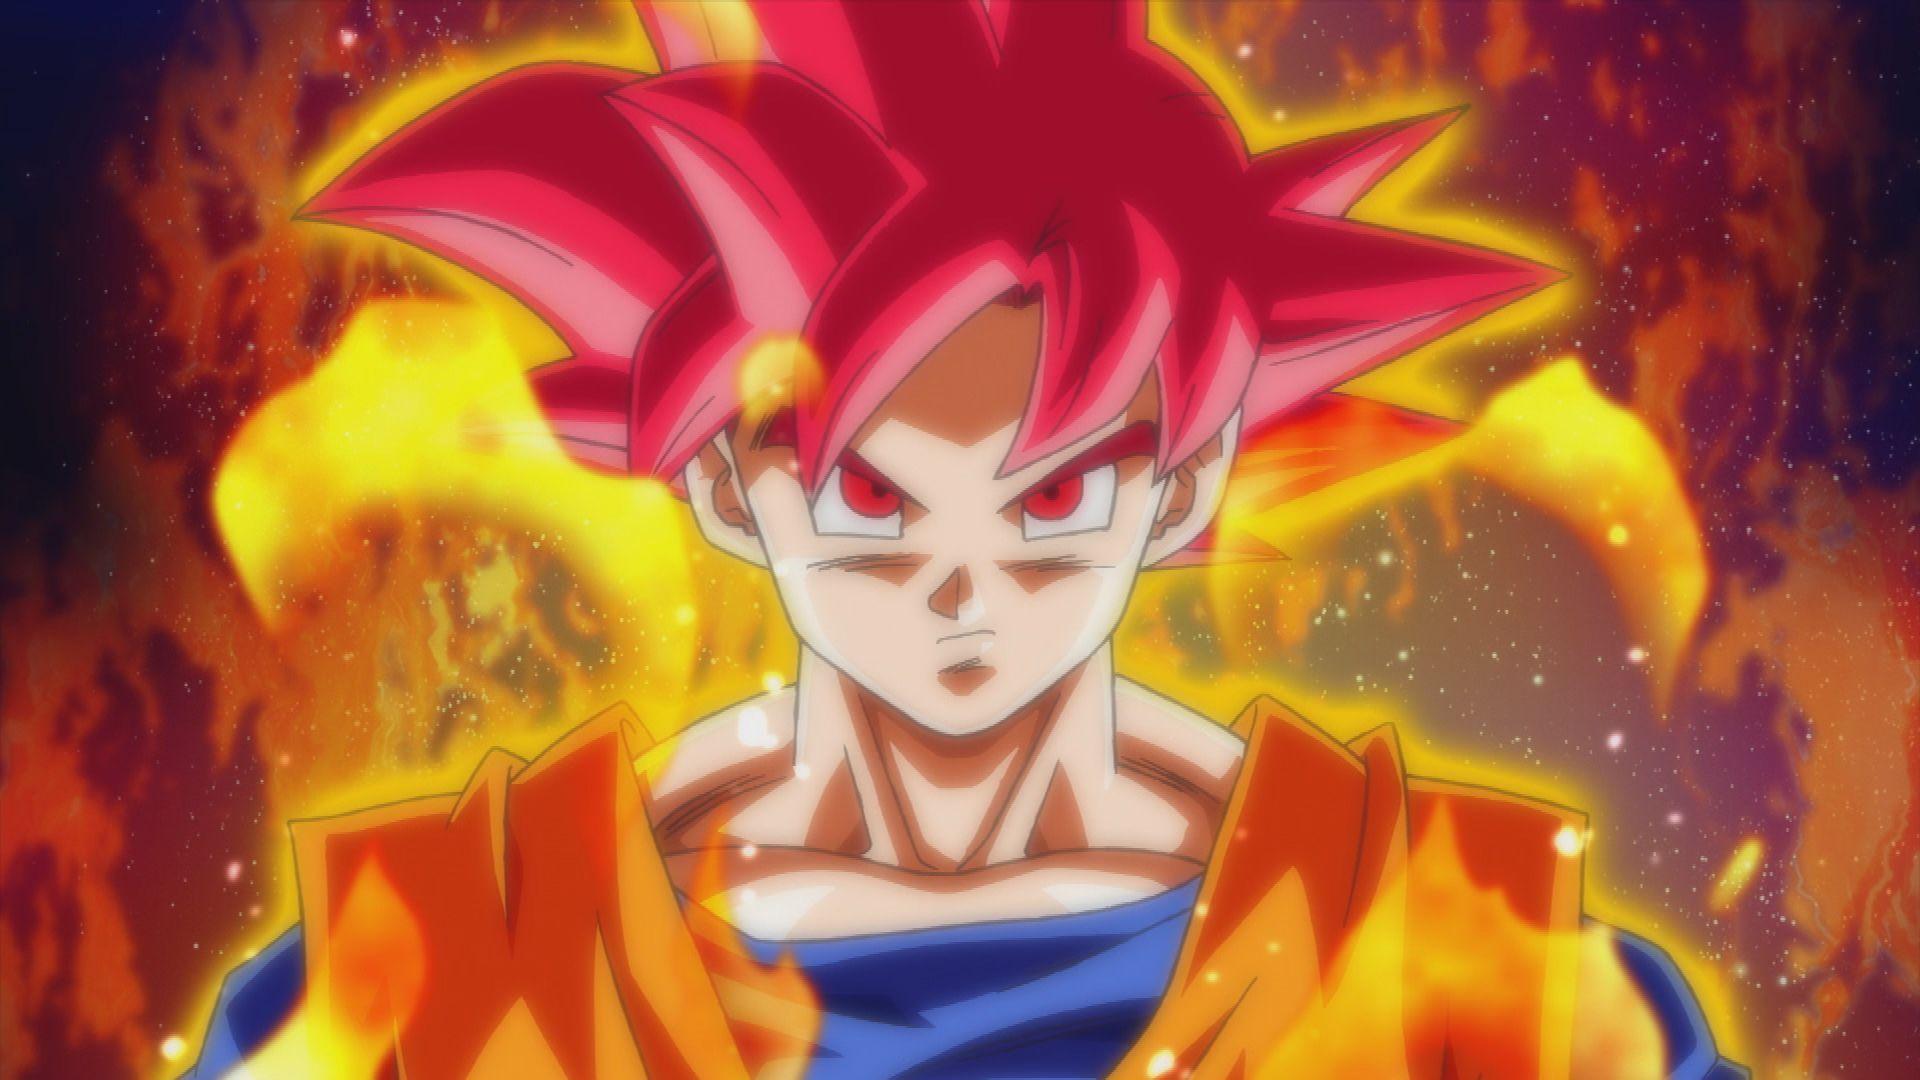 Dragon Ball Z Goku Super Saiyan God Wallpaper. Majin, Dragonball